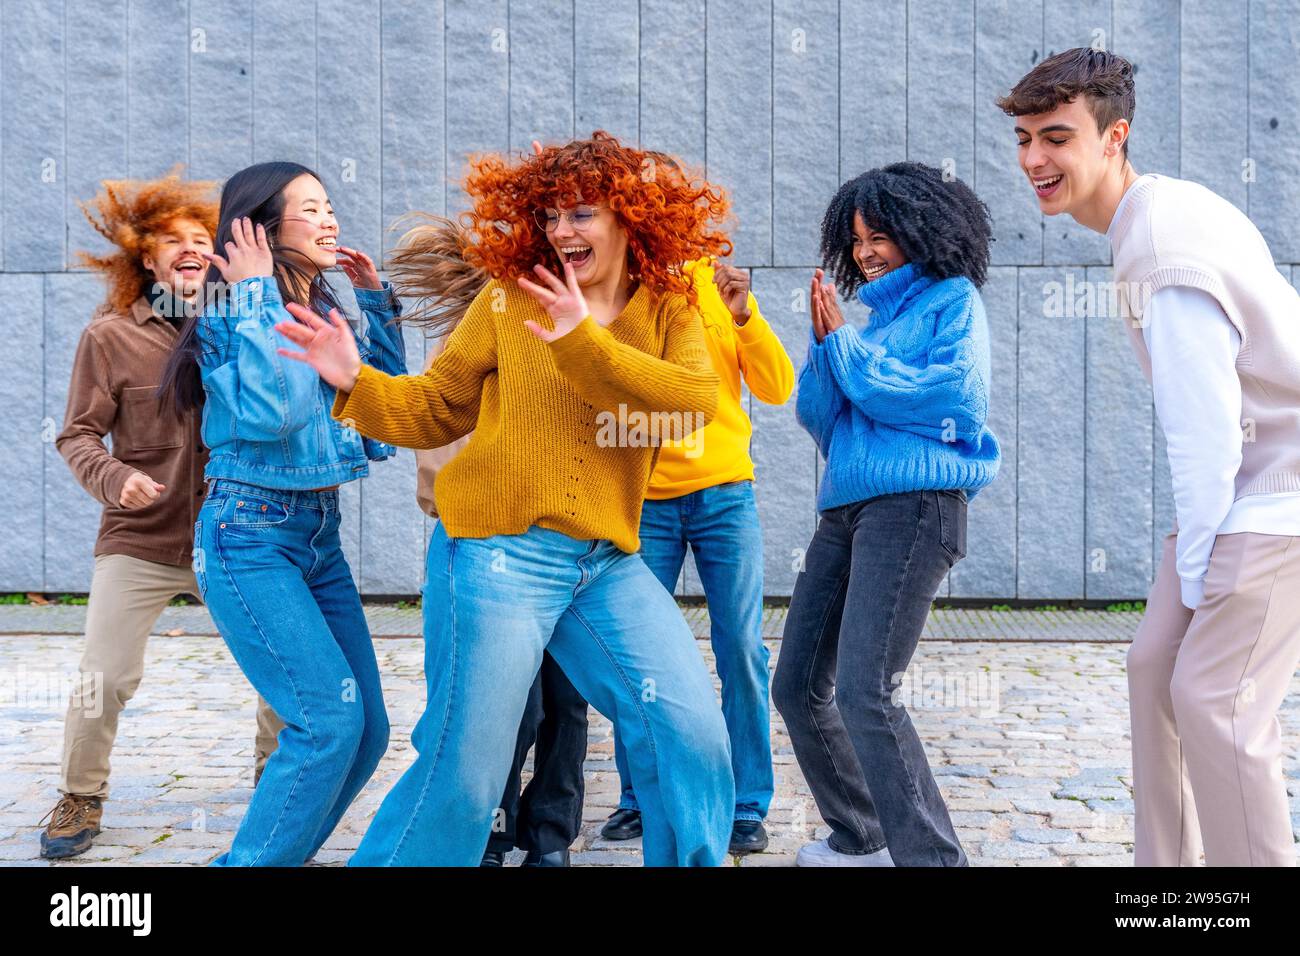 Frontalansicht eines glücklichen Mädchens, das mit einer Gruppe von Freunden in der Stadt tanzt Stockfoto